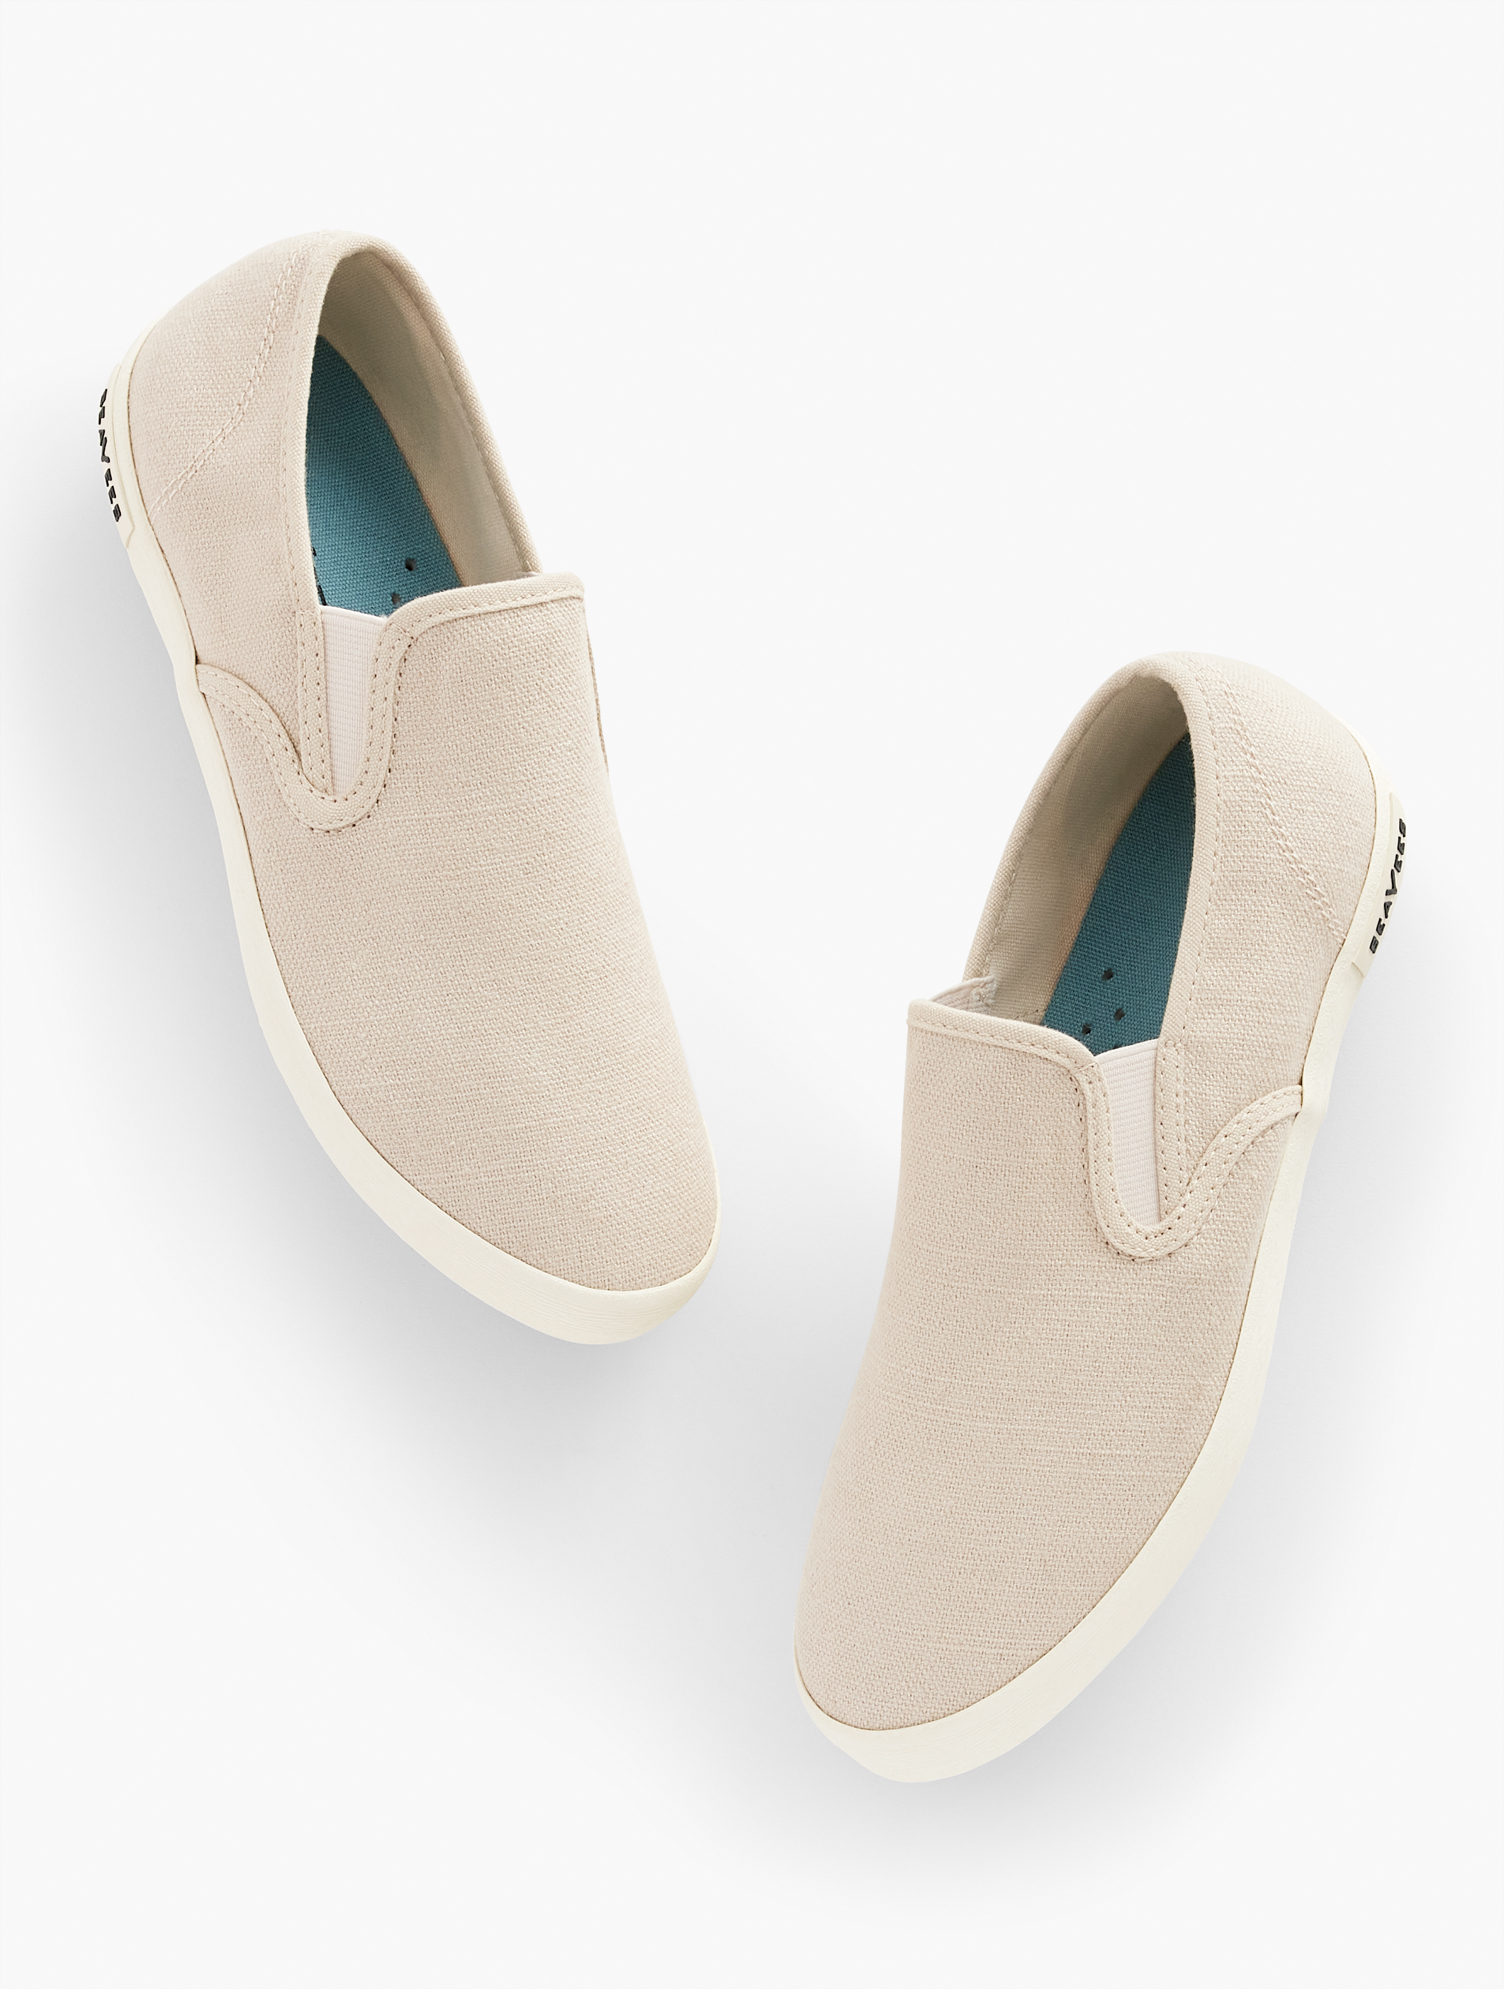 Talbots Seaveesâ¢ Baja Classic Linen Sneakers - Natural - 9 1/2 M  In Natural Linen